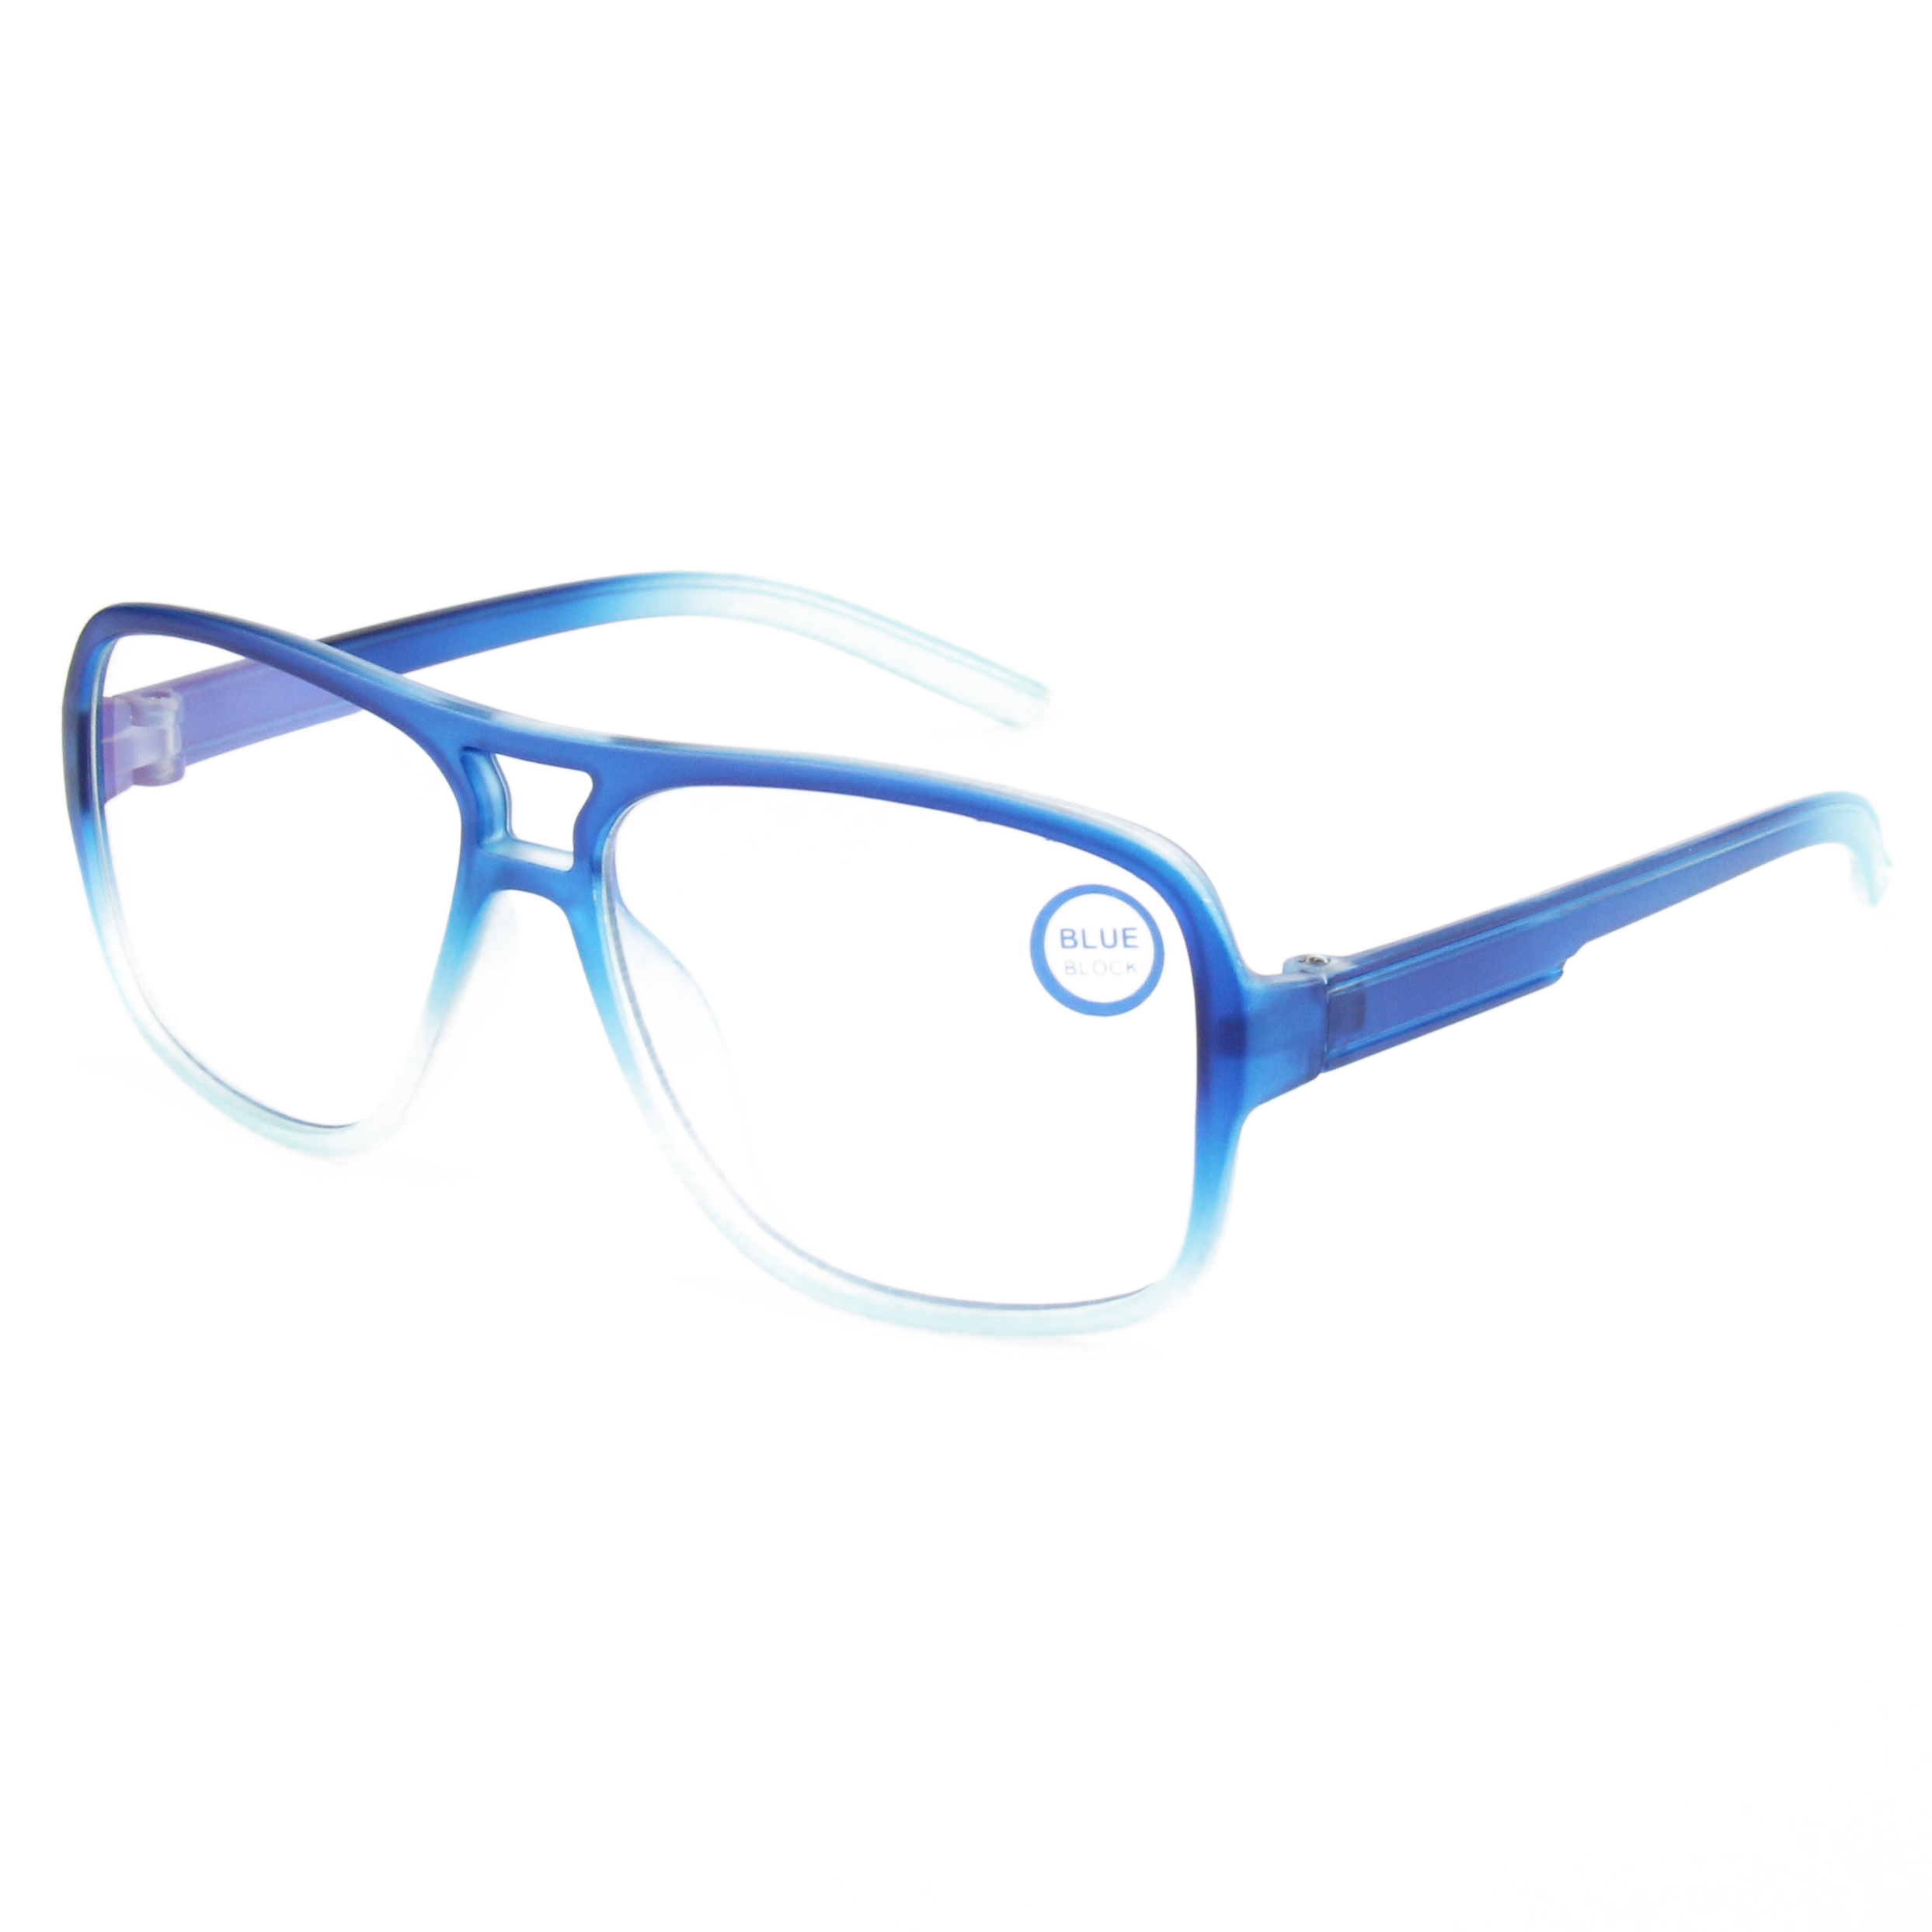 Eugenia Logotipo personalizado Plástico Blue Ray Bloqueo de lectura Gafas de sol